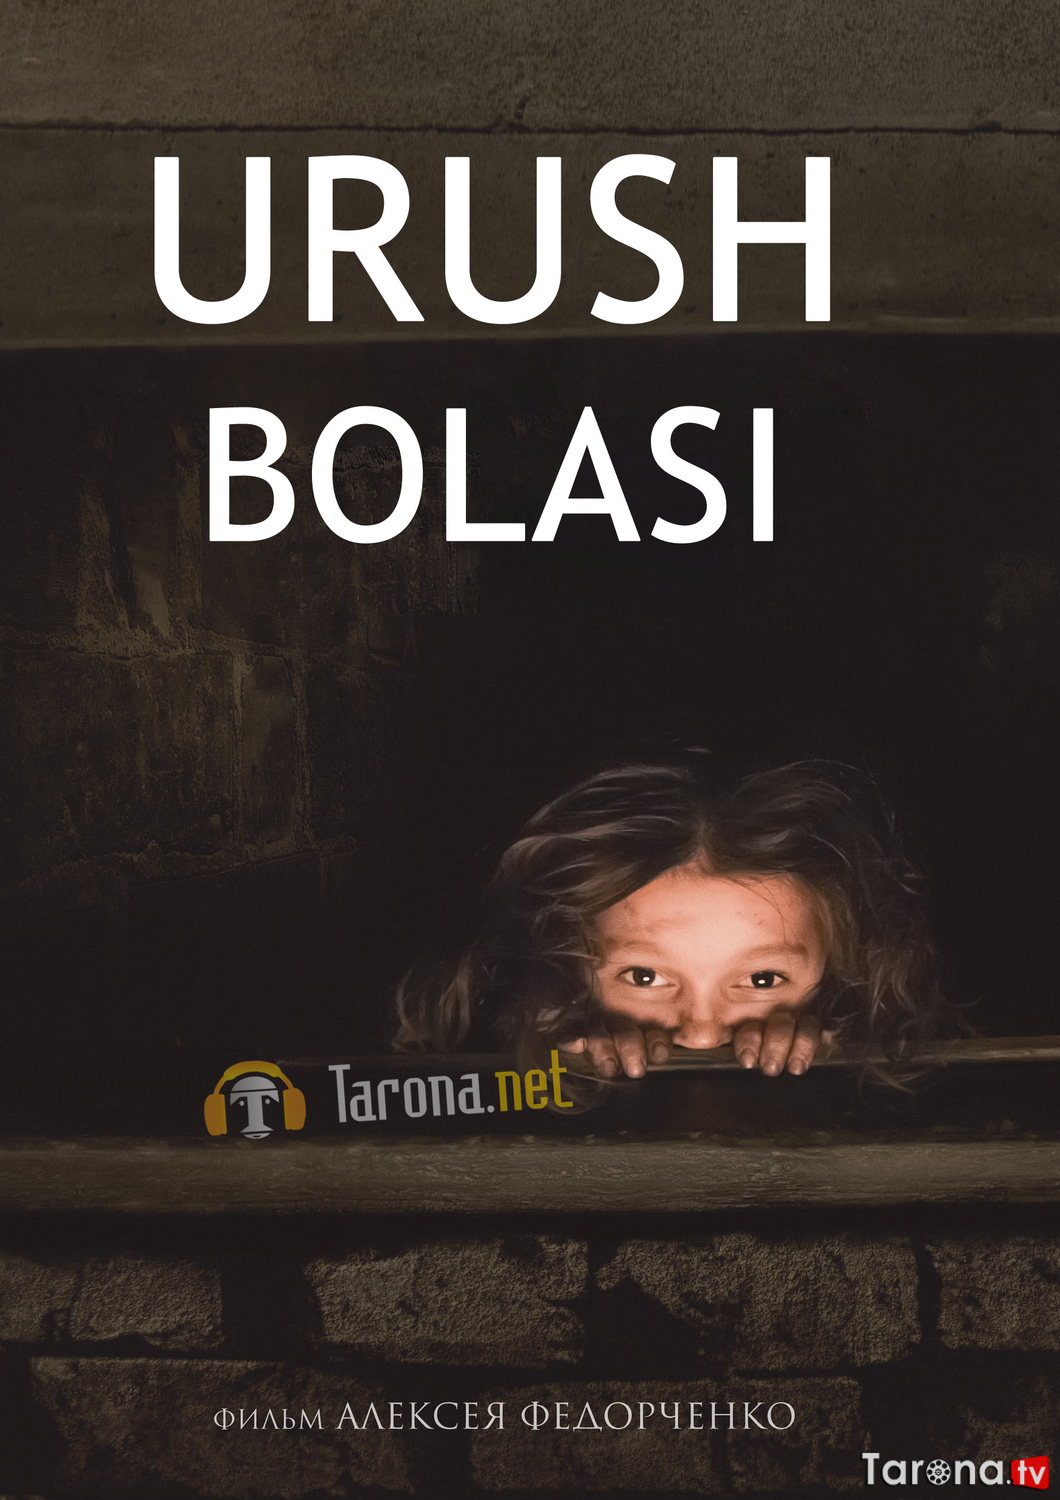 Urush Bolasi / Anna urushi Uzbek tilida 2018